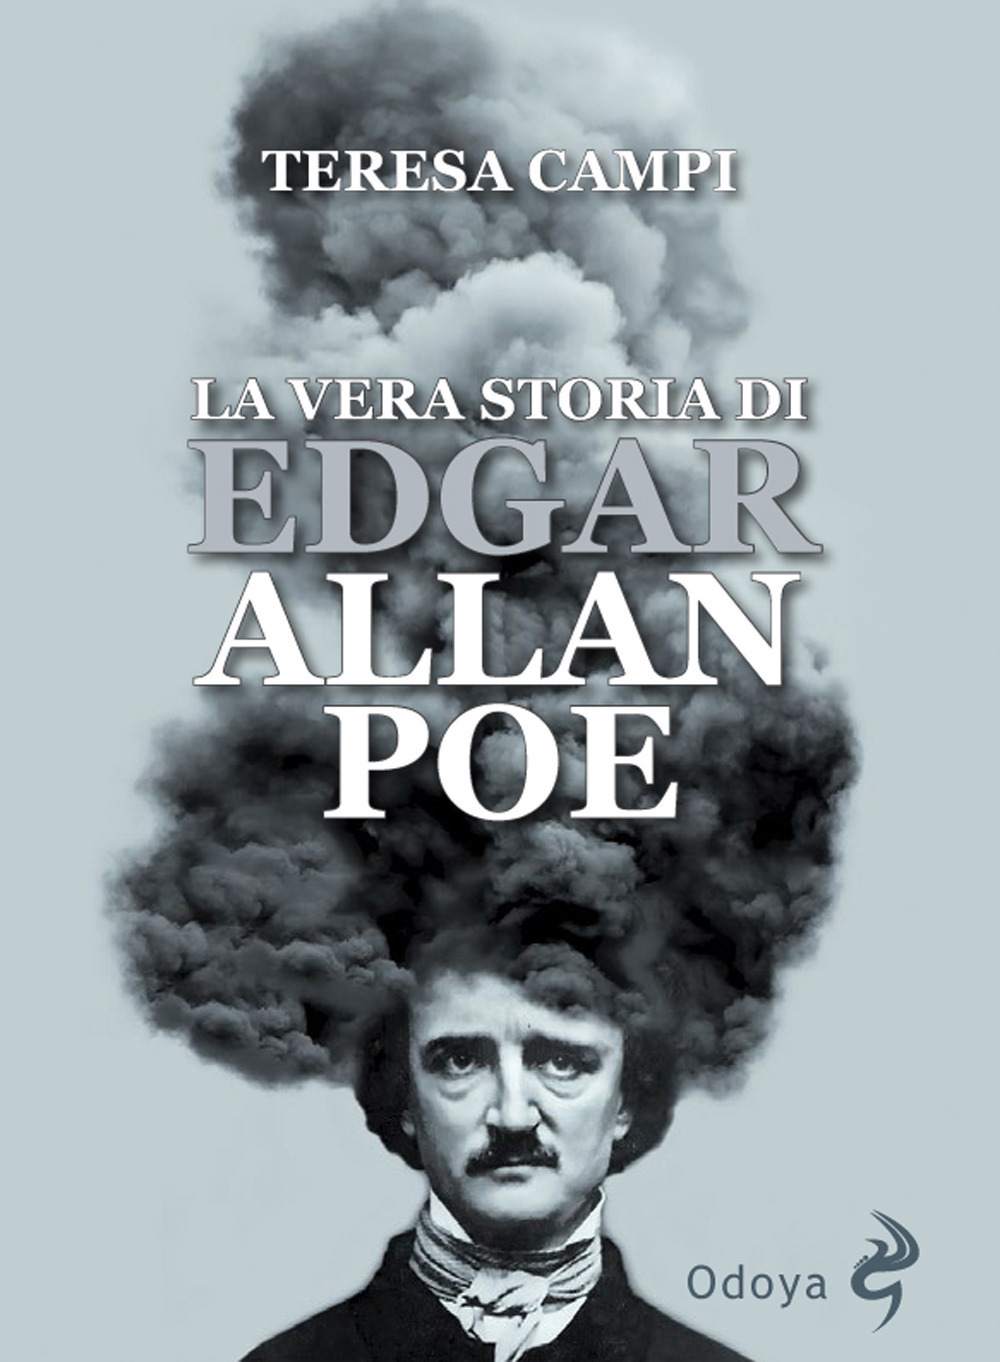 Libri Teresa Campi - La Vera Storia Di Edgar Allan Poe NUOVO SIGILLATO, EDIZIONE DEL 18/06/2020 SUBITO DISPONIBILE